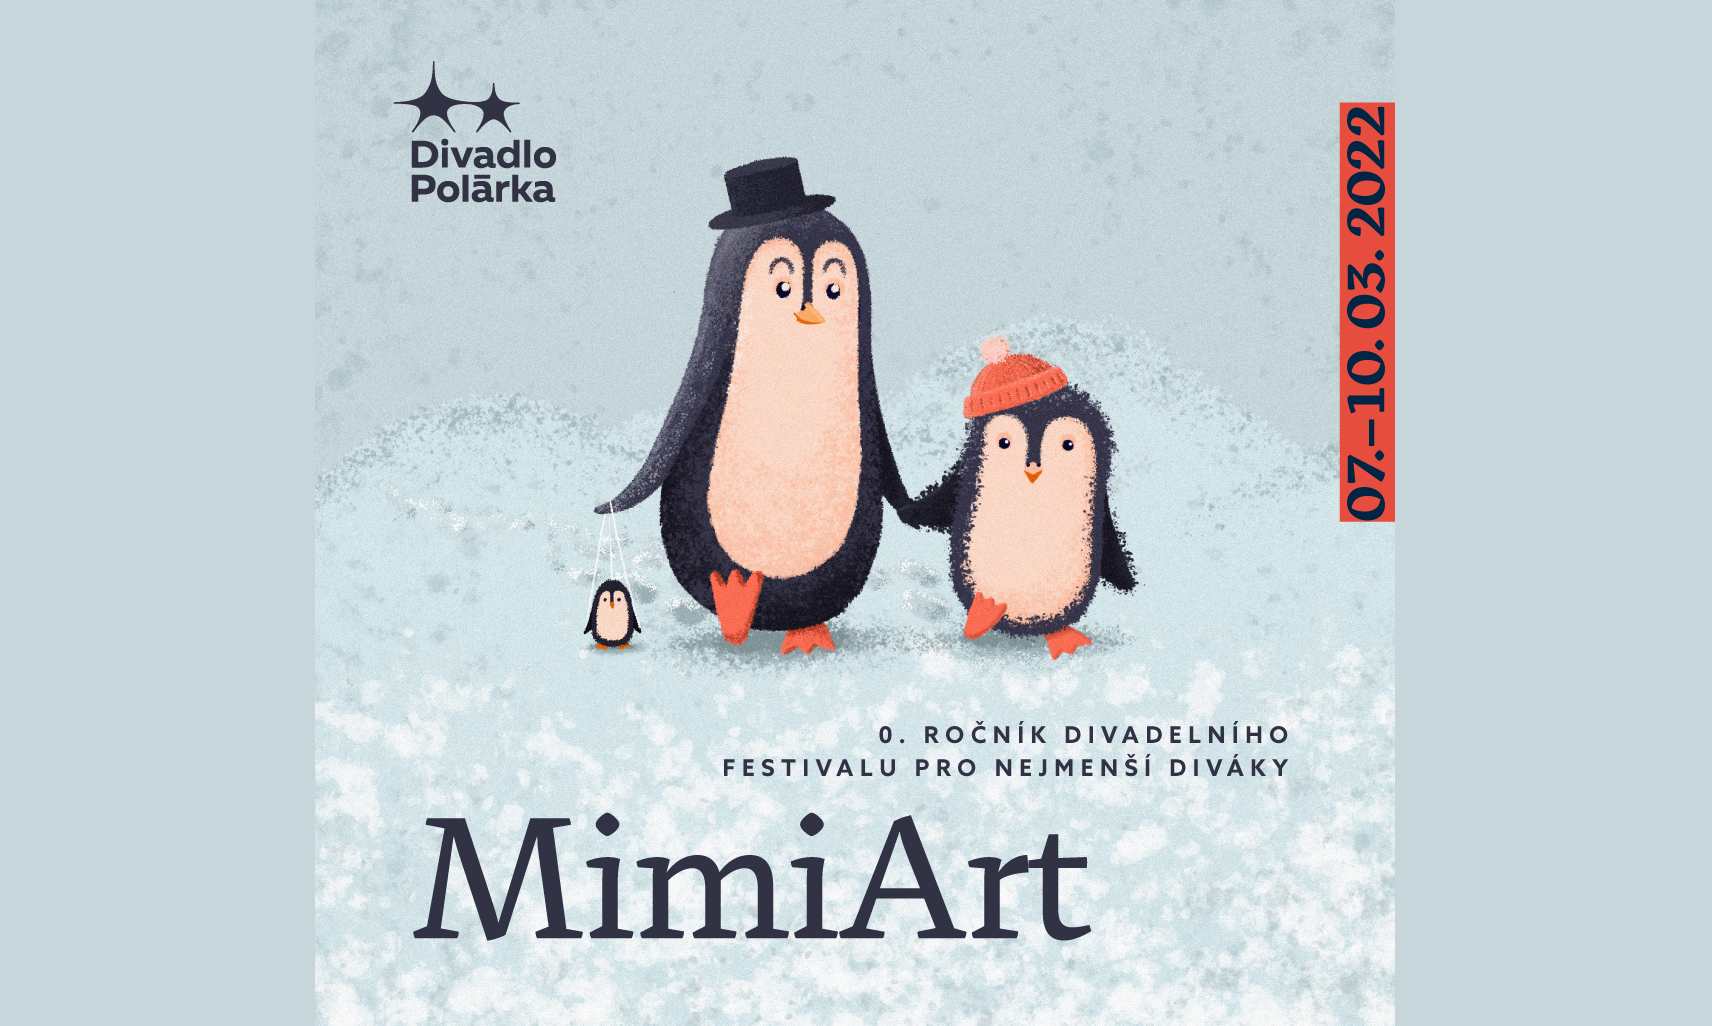 Divadlo Polárka, MimiArt